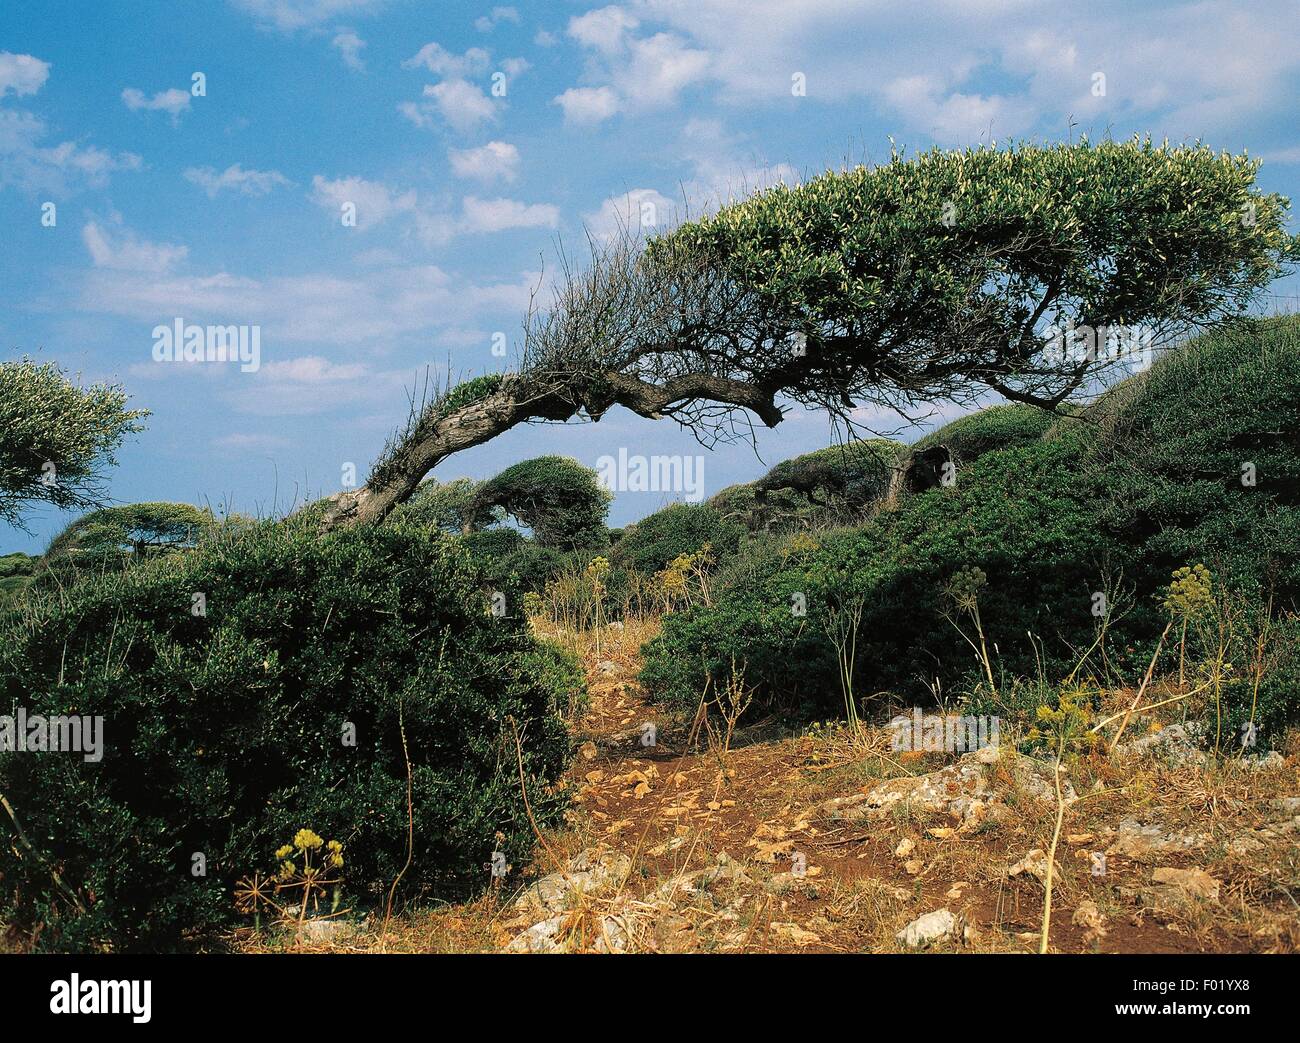 Trees bent by the wind, Sardinia region, Italy. Stock Photo